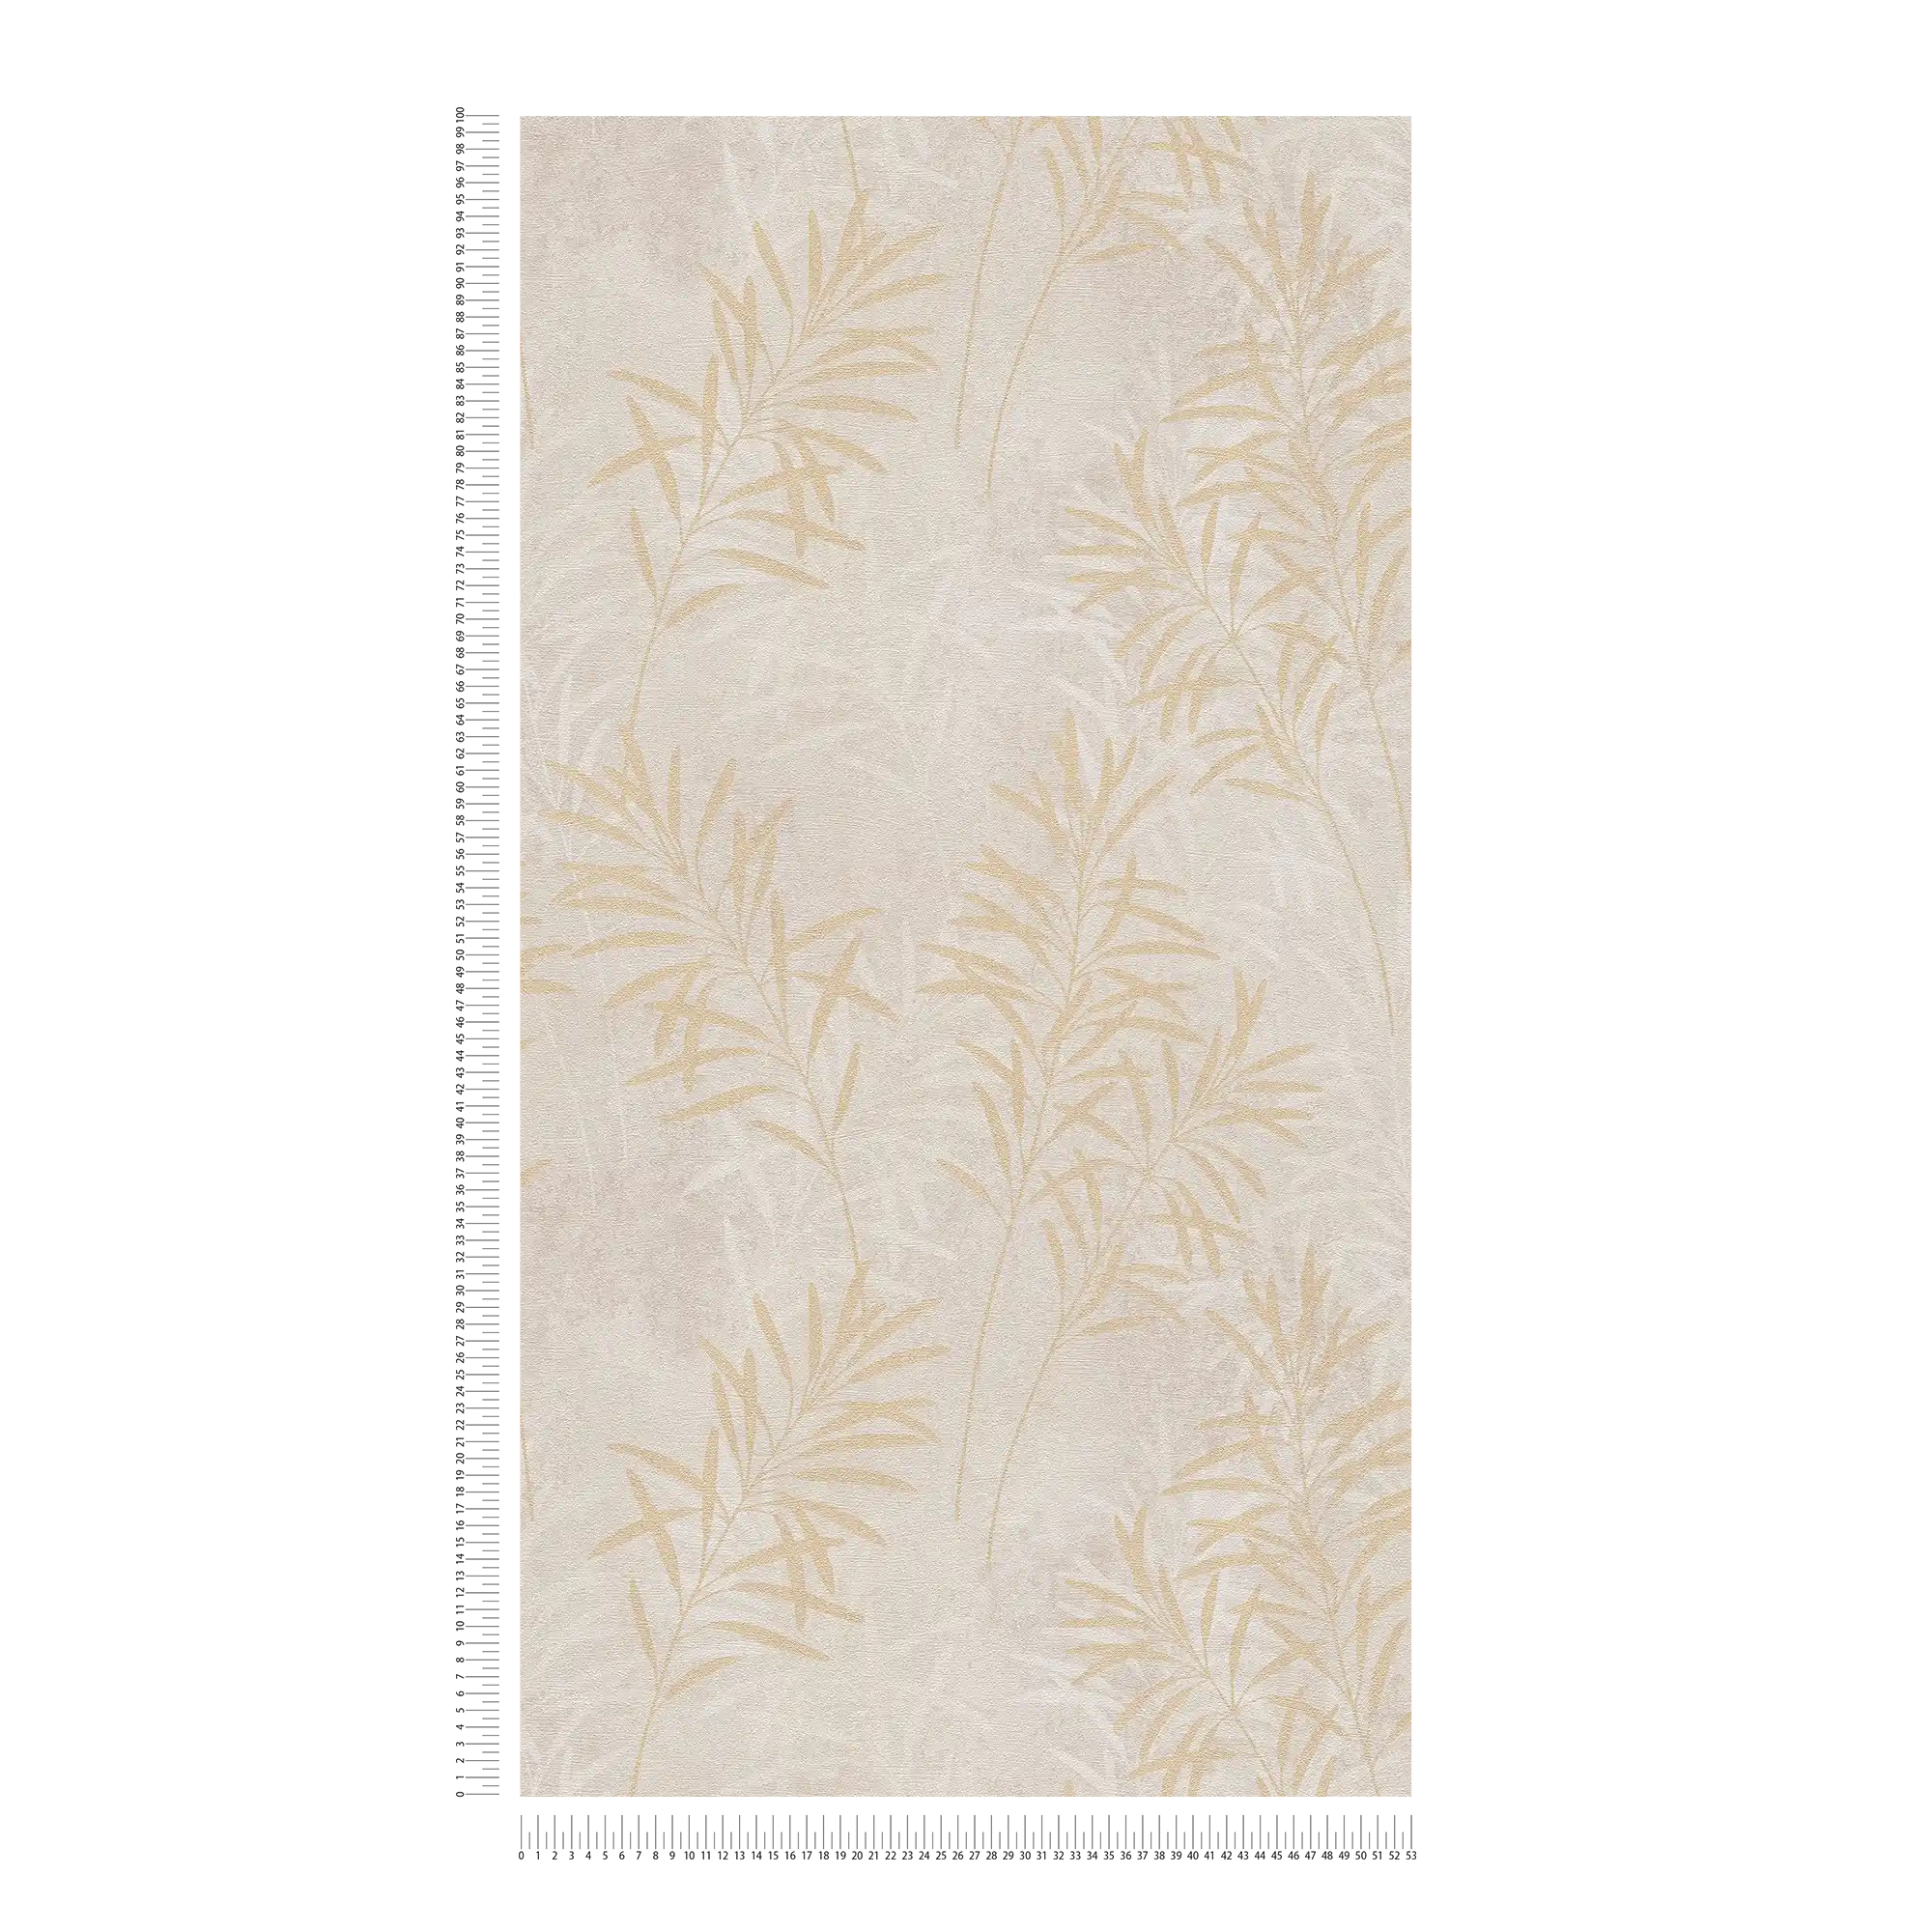             Vliesbehang met bloemen palmboom patroon - crème, grijs, goud
        